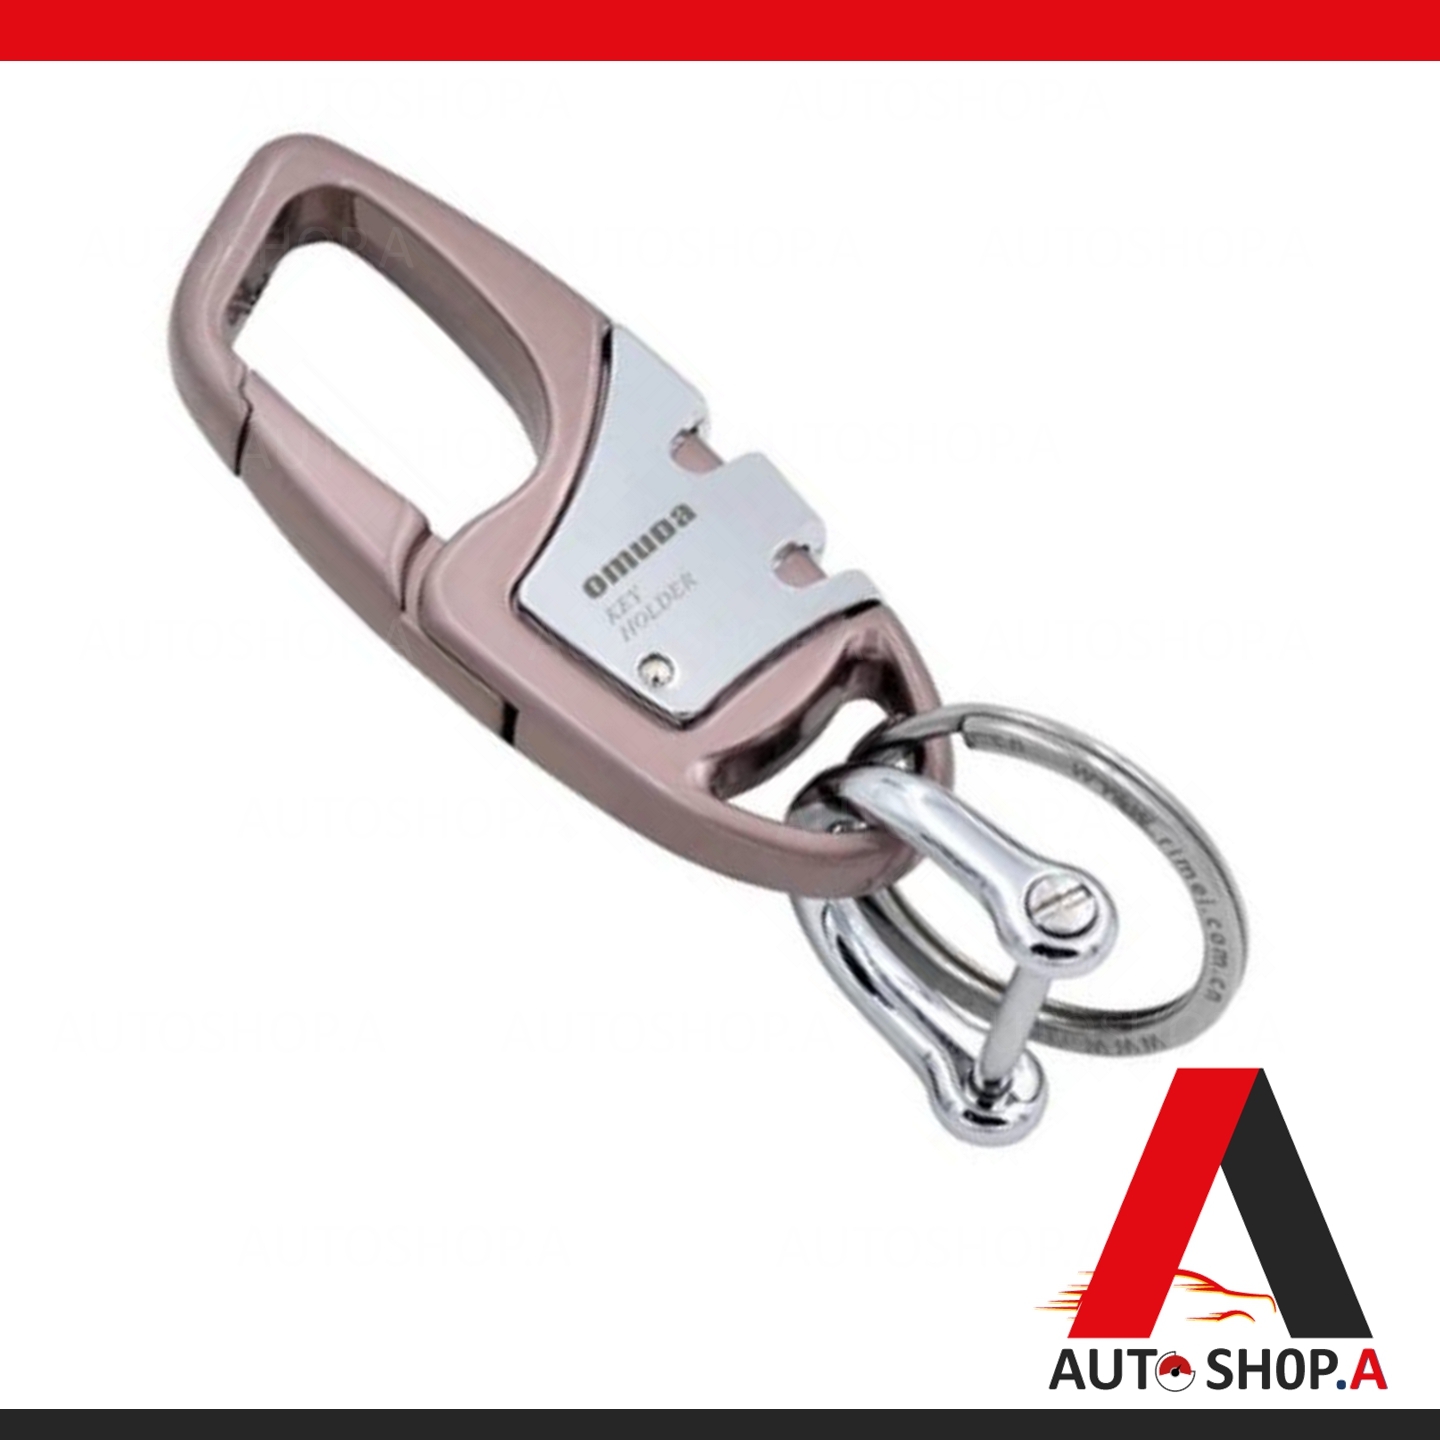 [รับประกันสินค้า] OMUDA (สีชมพู) พวงกุญแจ พวงกุญแจรถยนต์ พวงกุญแจแฟชั่น พวงกุญแจบ้าน พวงกุญแจโลหะ